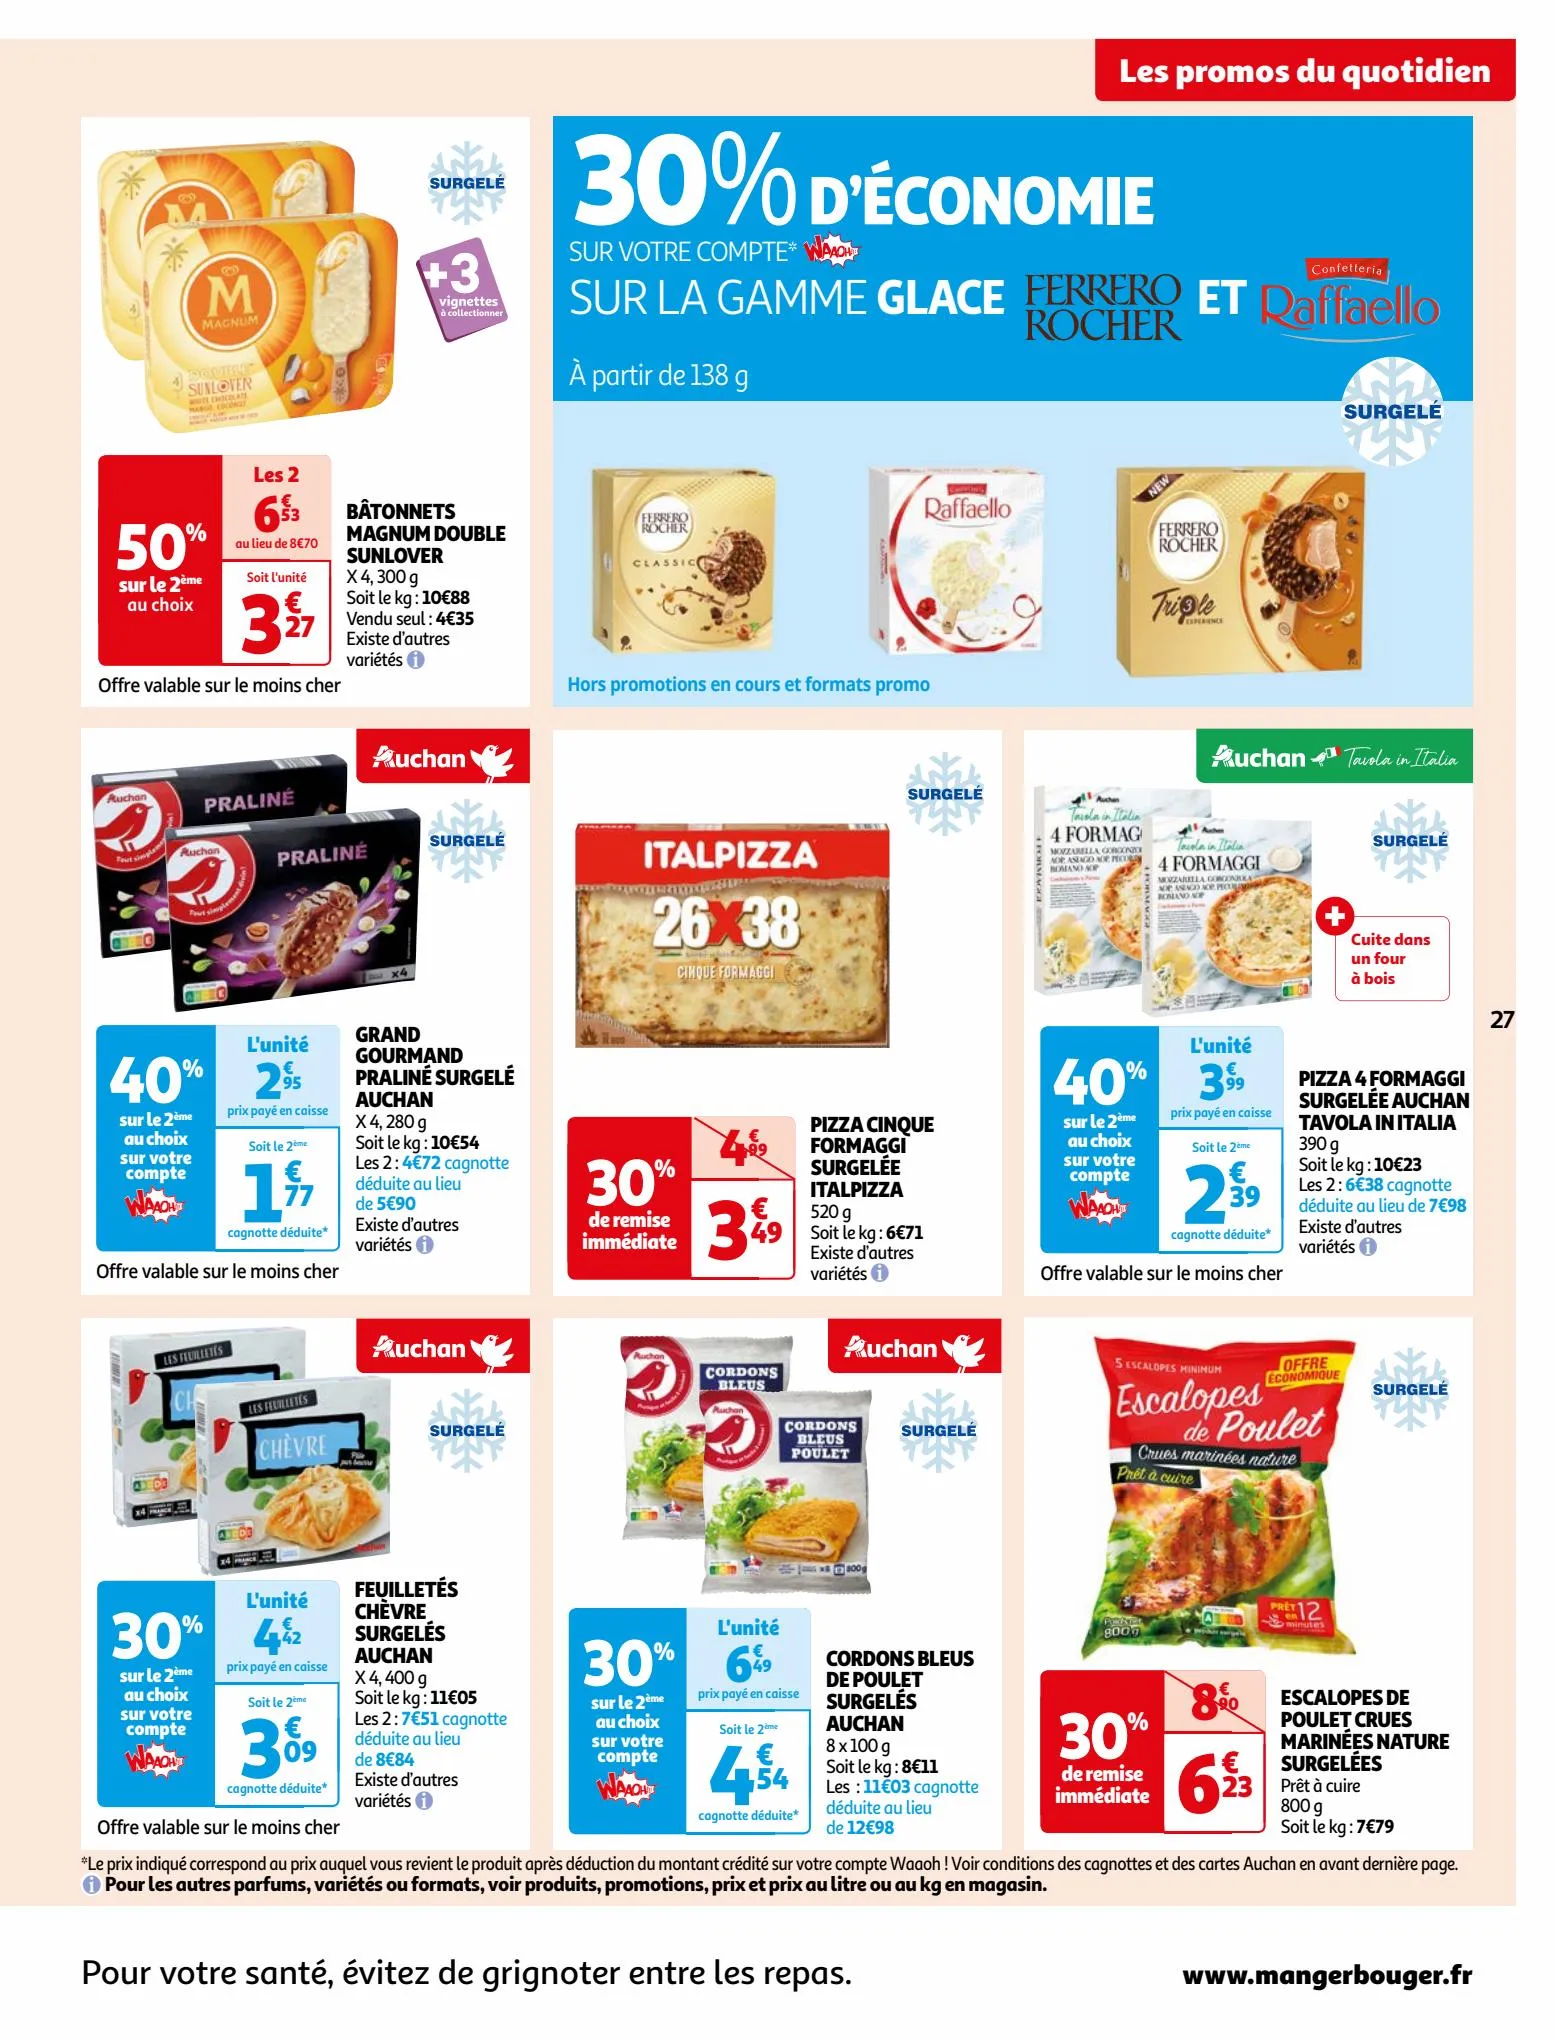 Catalogue Vos produits laitiers à petits prix !, page 00027